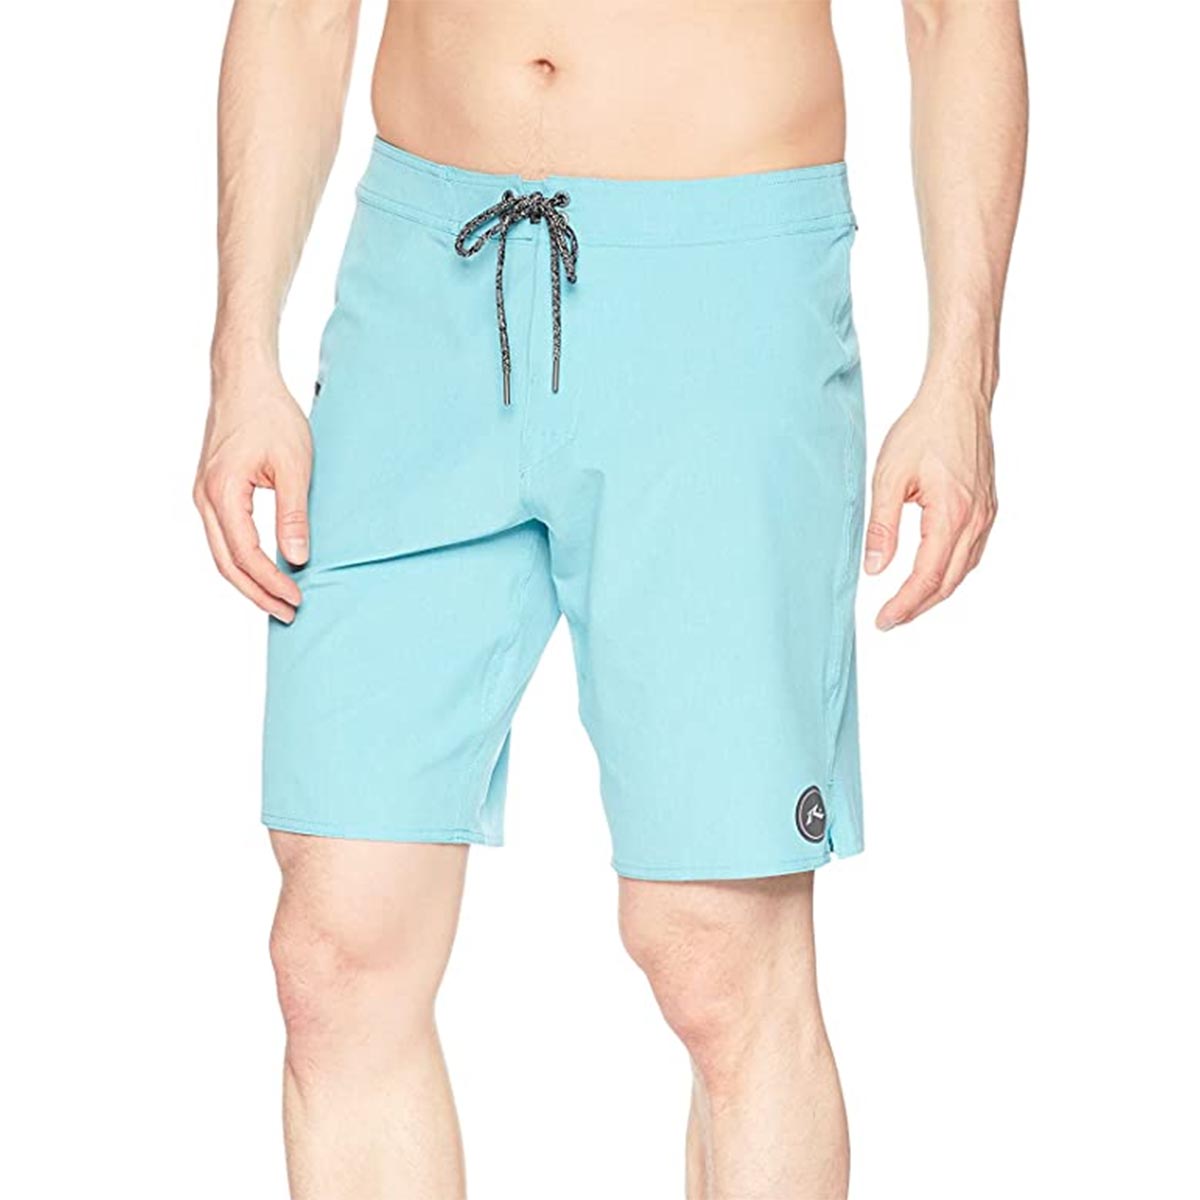 Rusty Marled 2 Men's Boardshort Shorts - Maui Blue